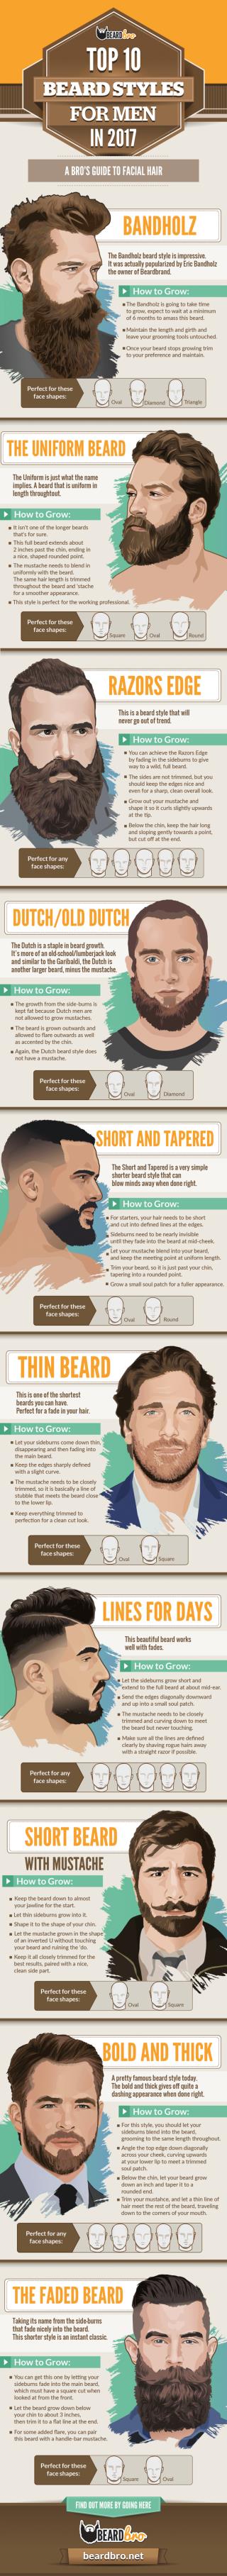 Top 10 Beard Styles for Men in 2017